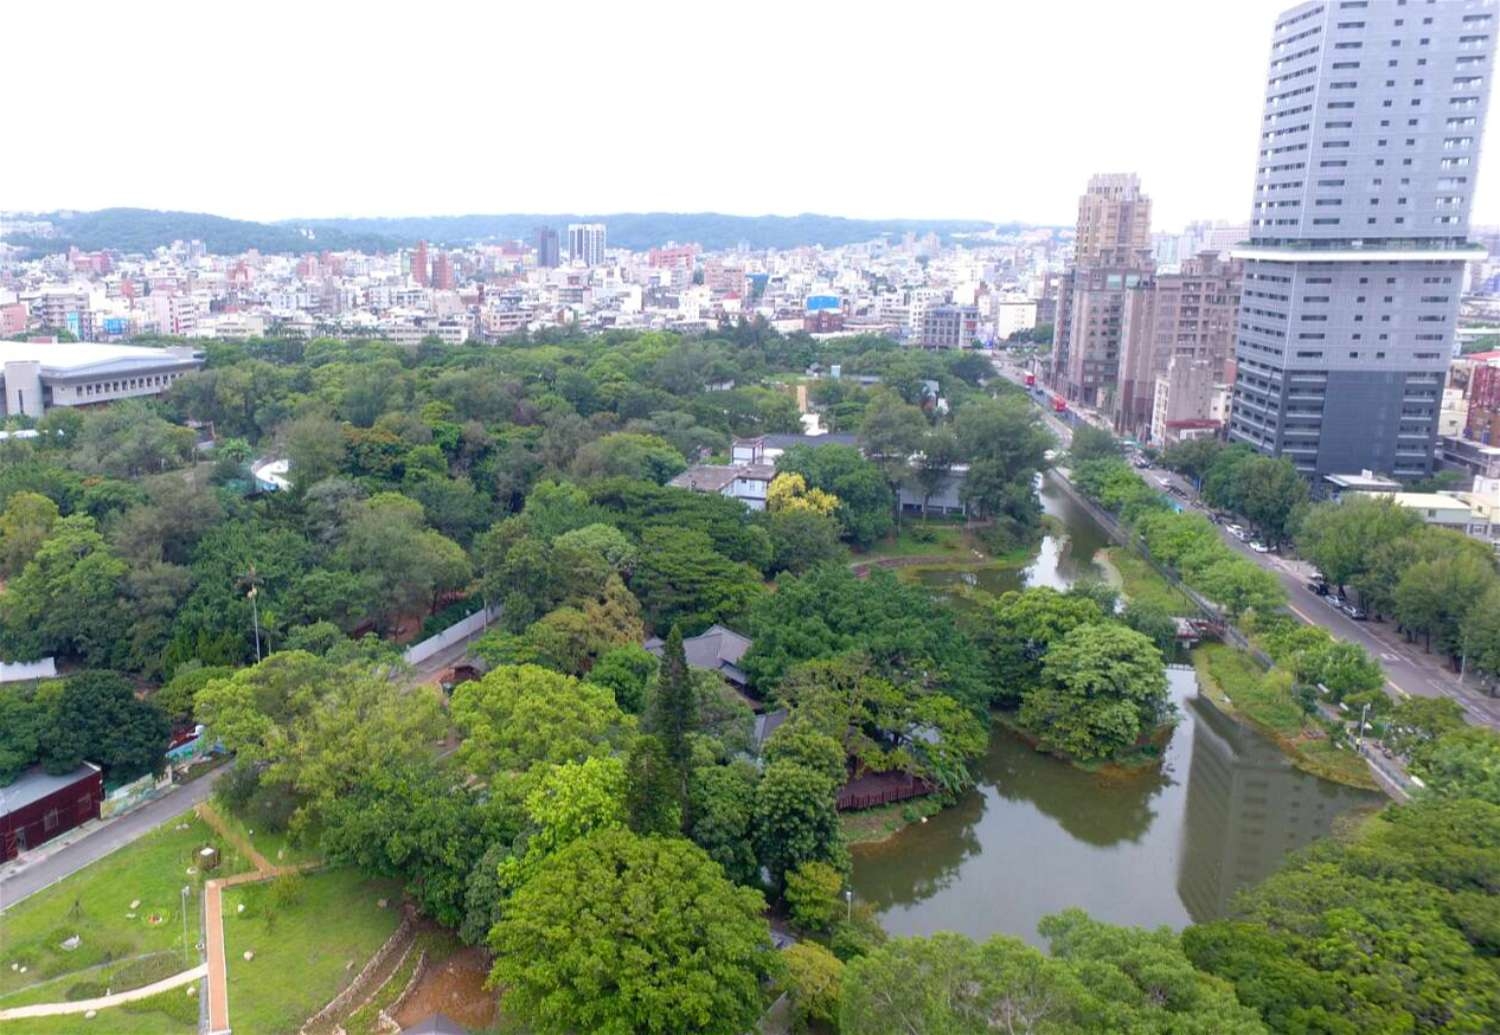 新竹公園麗池園林29日完工啟用 將成觀光新亮點